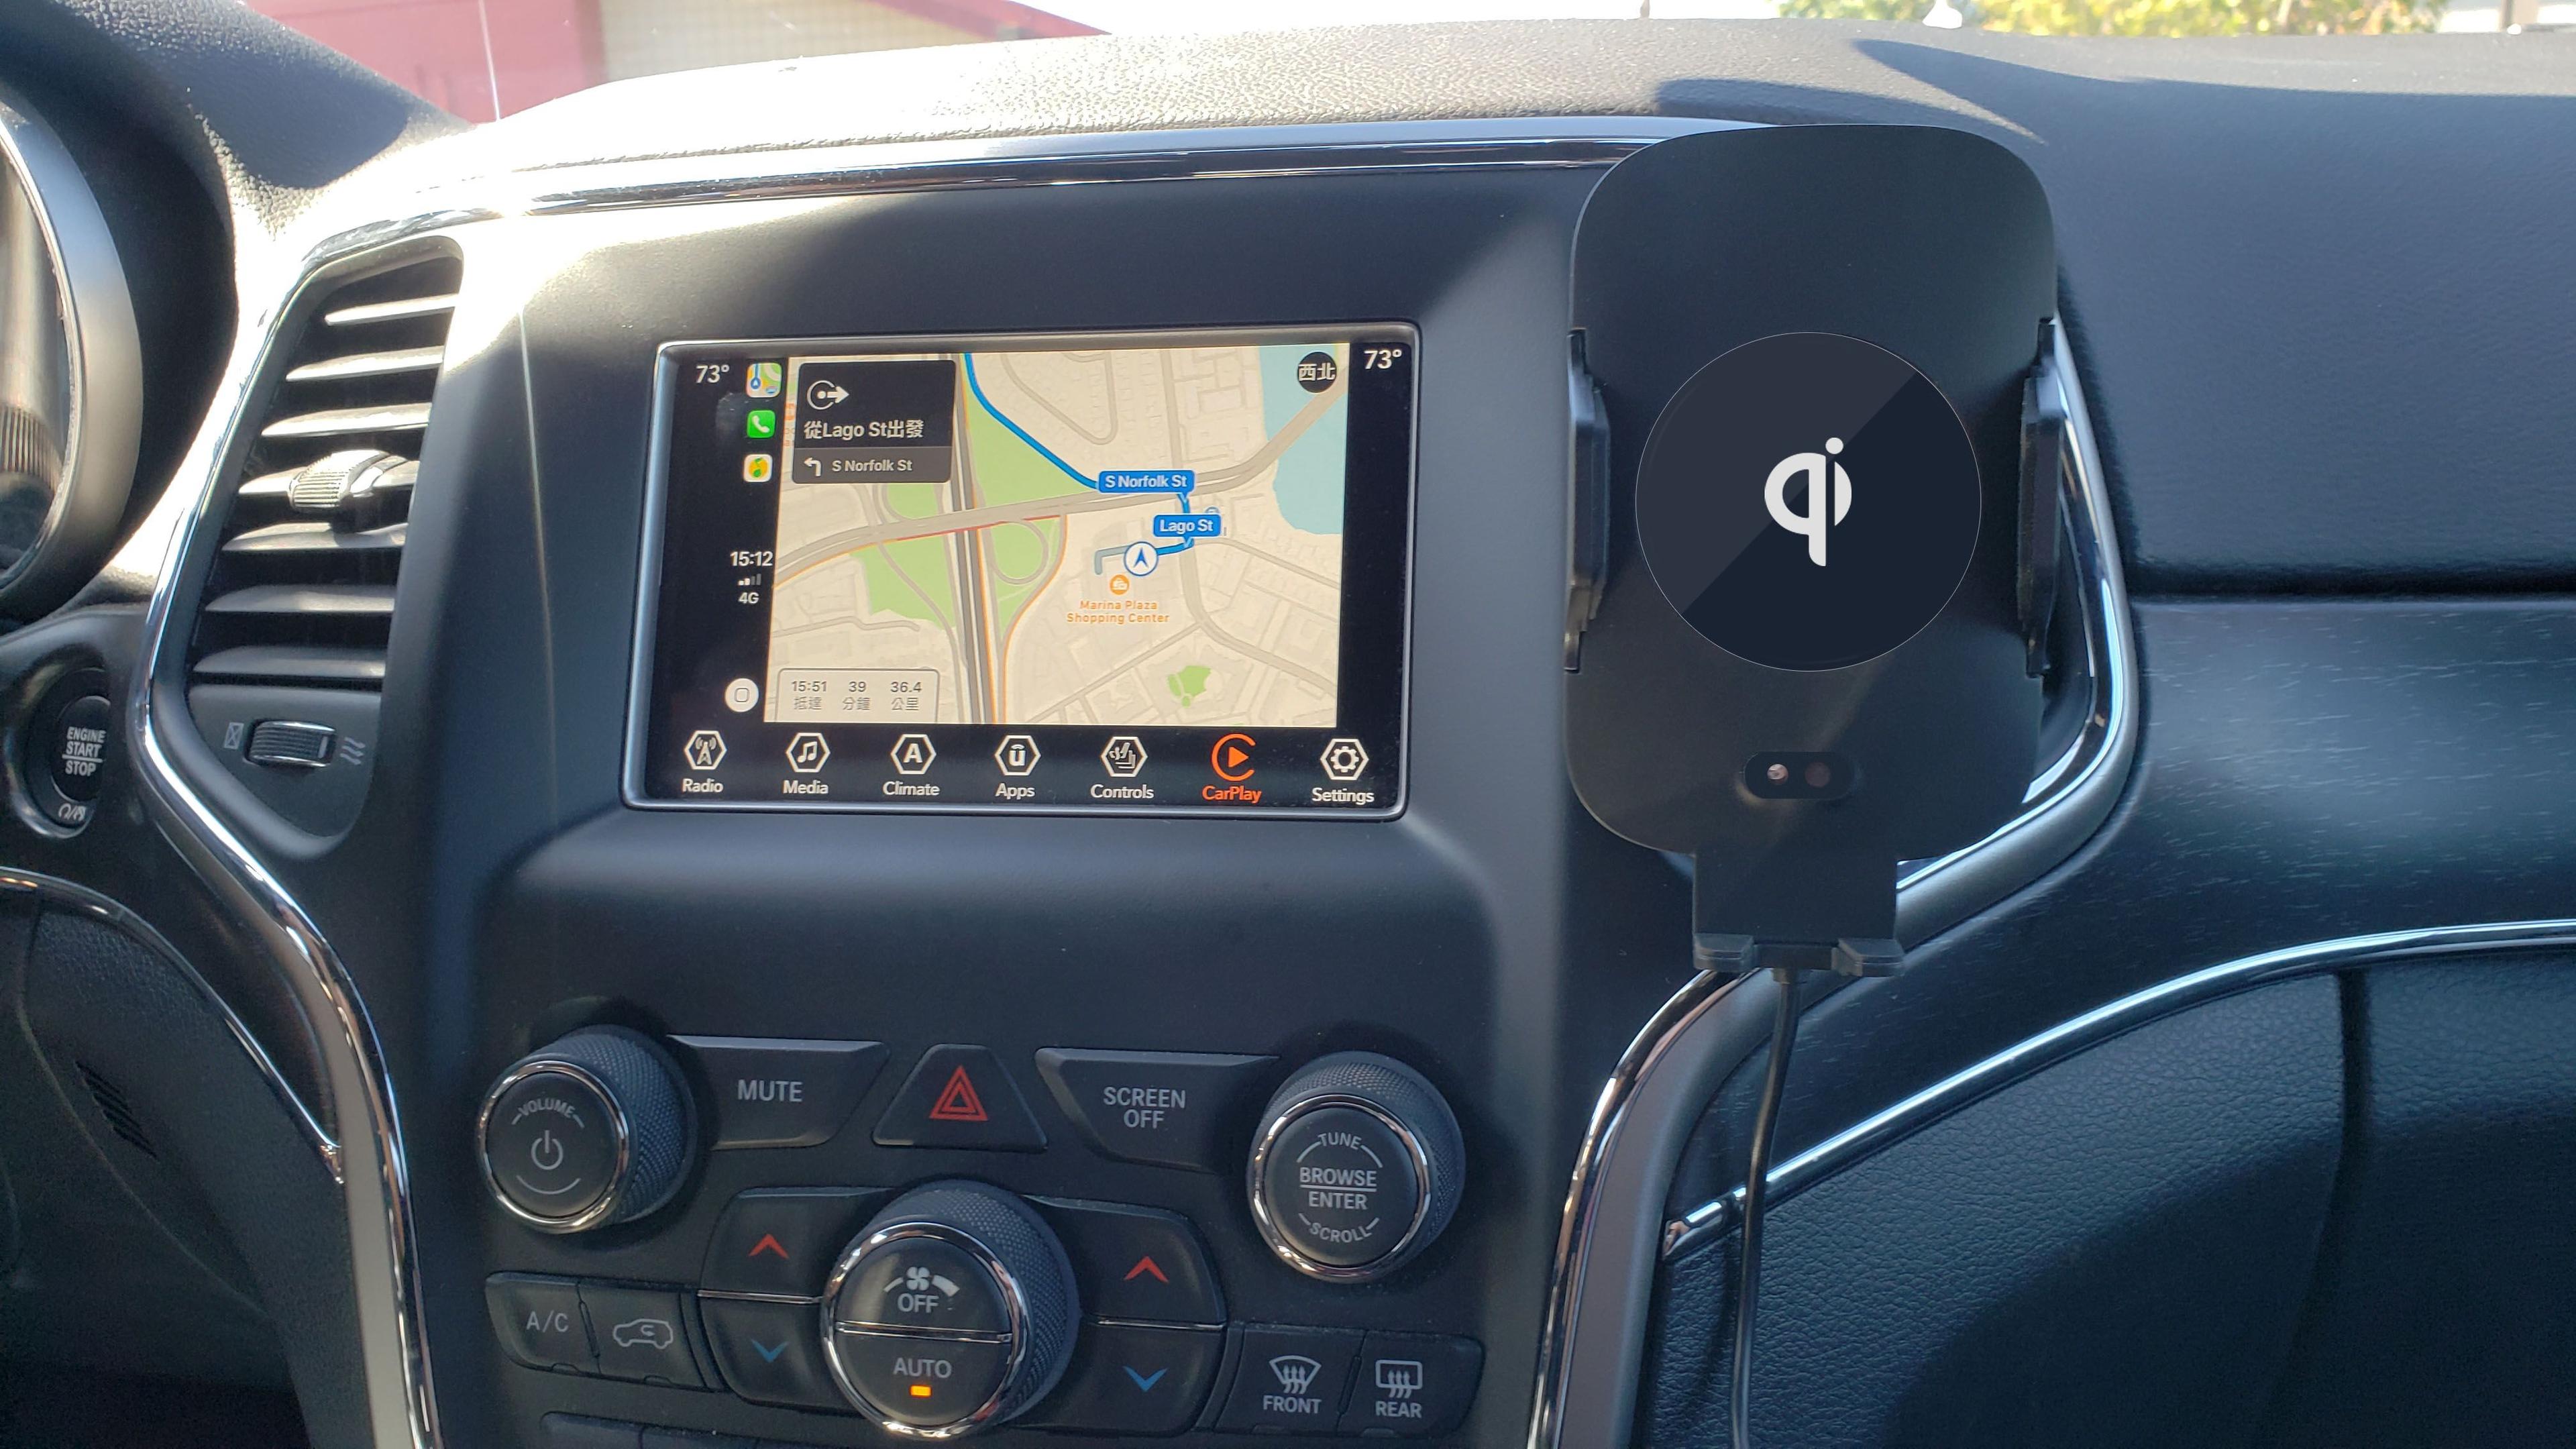 Držák do auta autmatický N9 indukční nabíjení